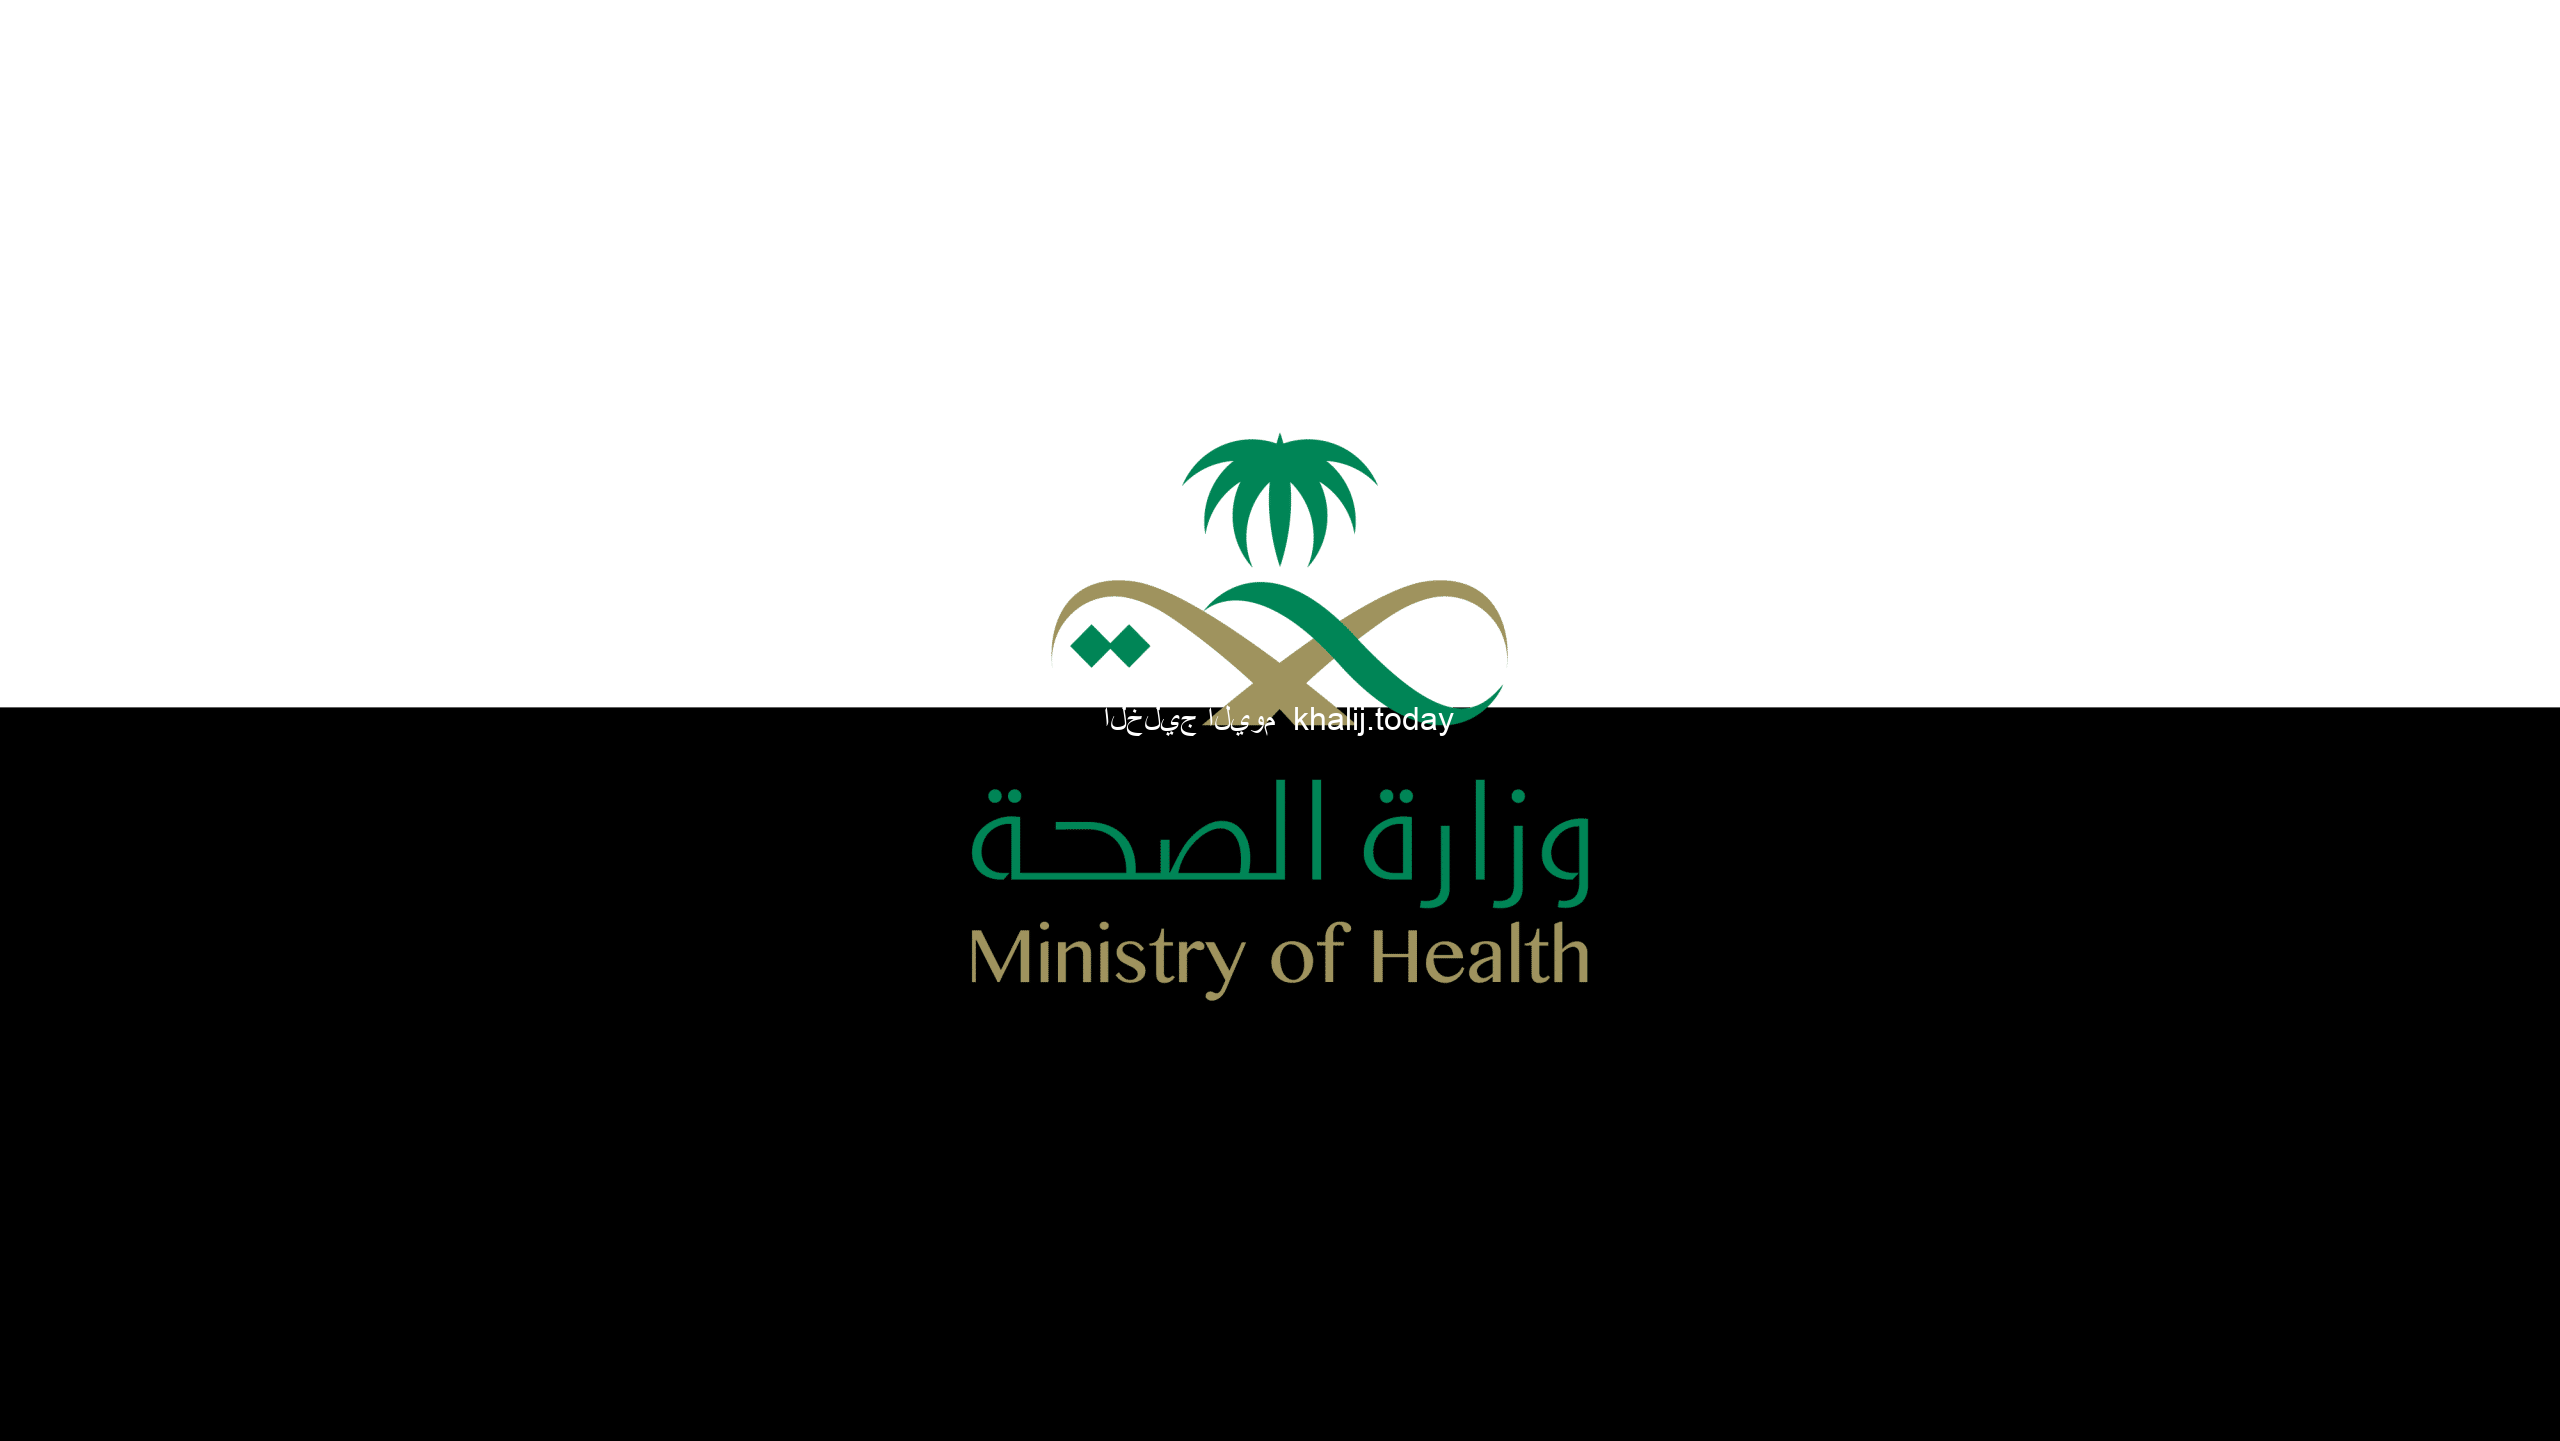 وزارة الصحة السعودية تكشف عن خط الحياة لتوفير الدعم اللازم للحالات الاستثنائية